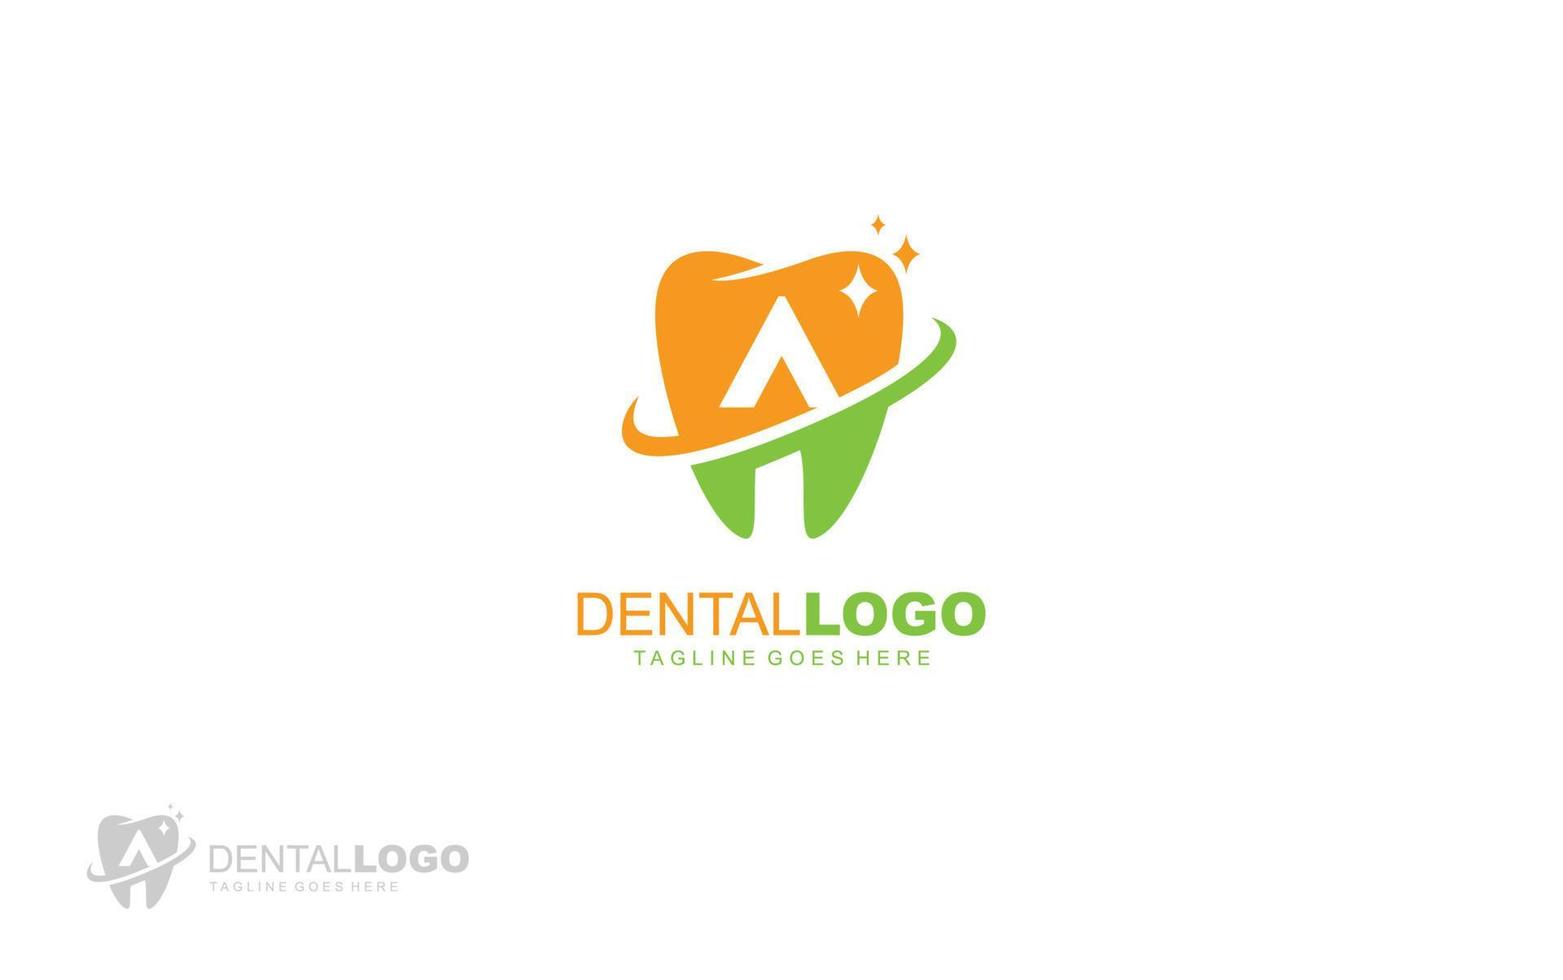 un logotipo de dentista para una empresa de marca. ilustración de vector de plantilla de carta para su marca.